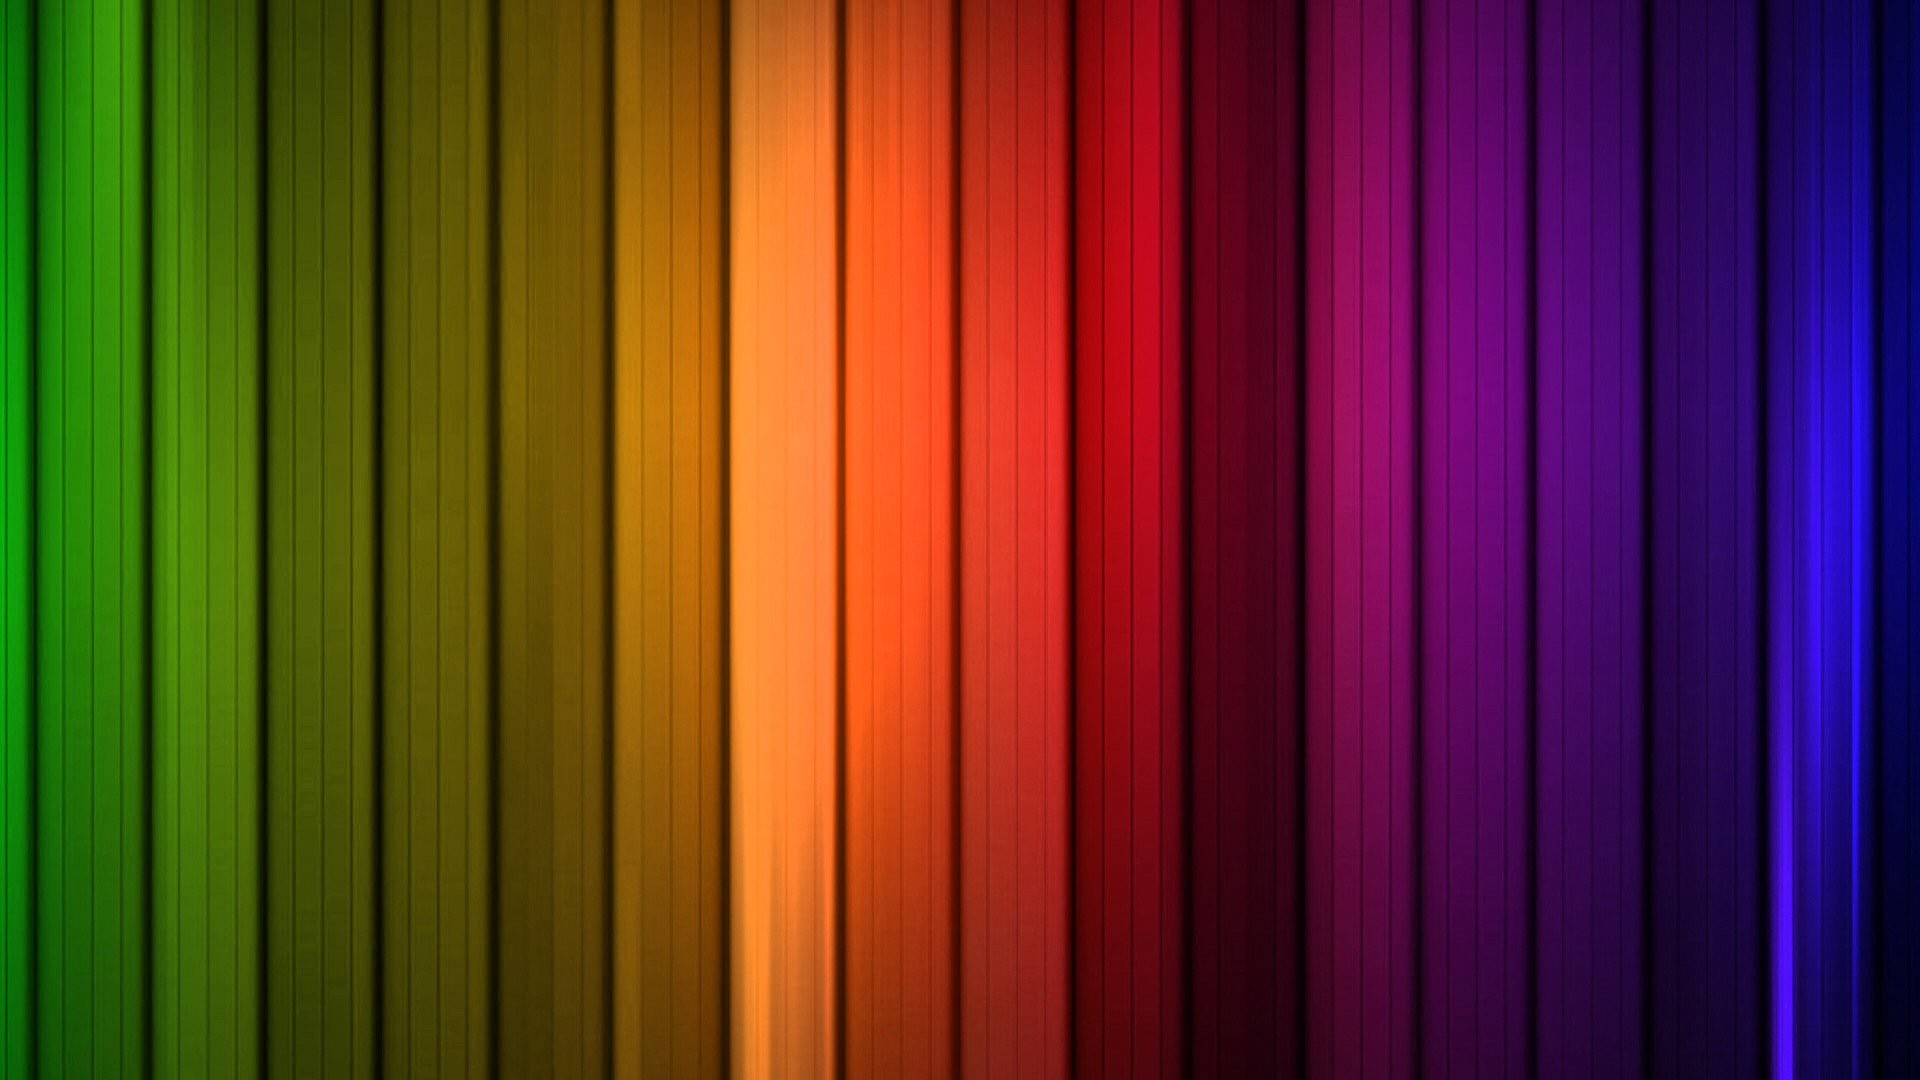 1920x1080 Rainbow HD Wallpaper | Hintergrund |  | ID:695351 - Wallpaper Abyss